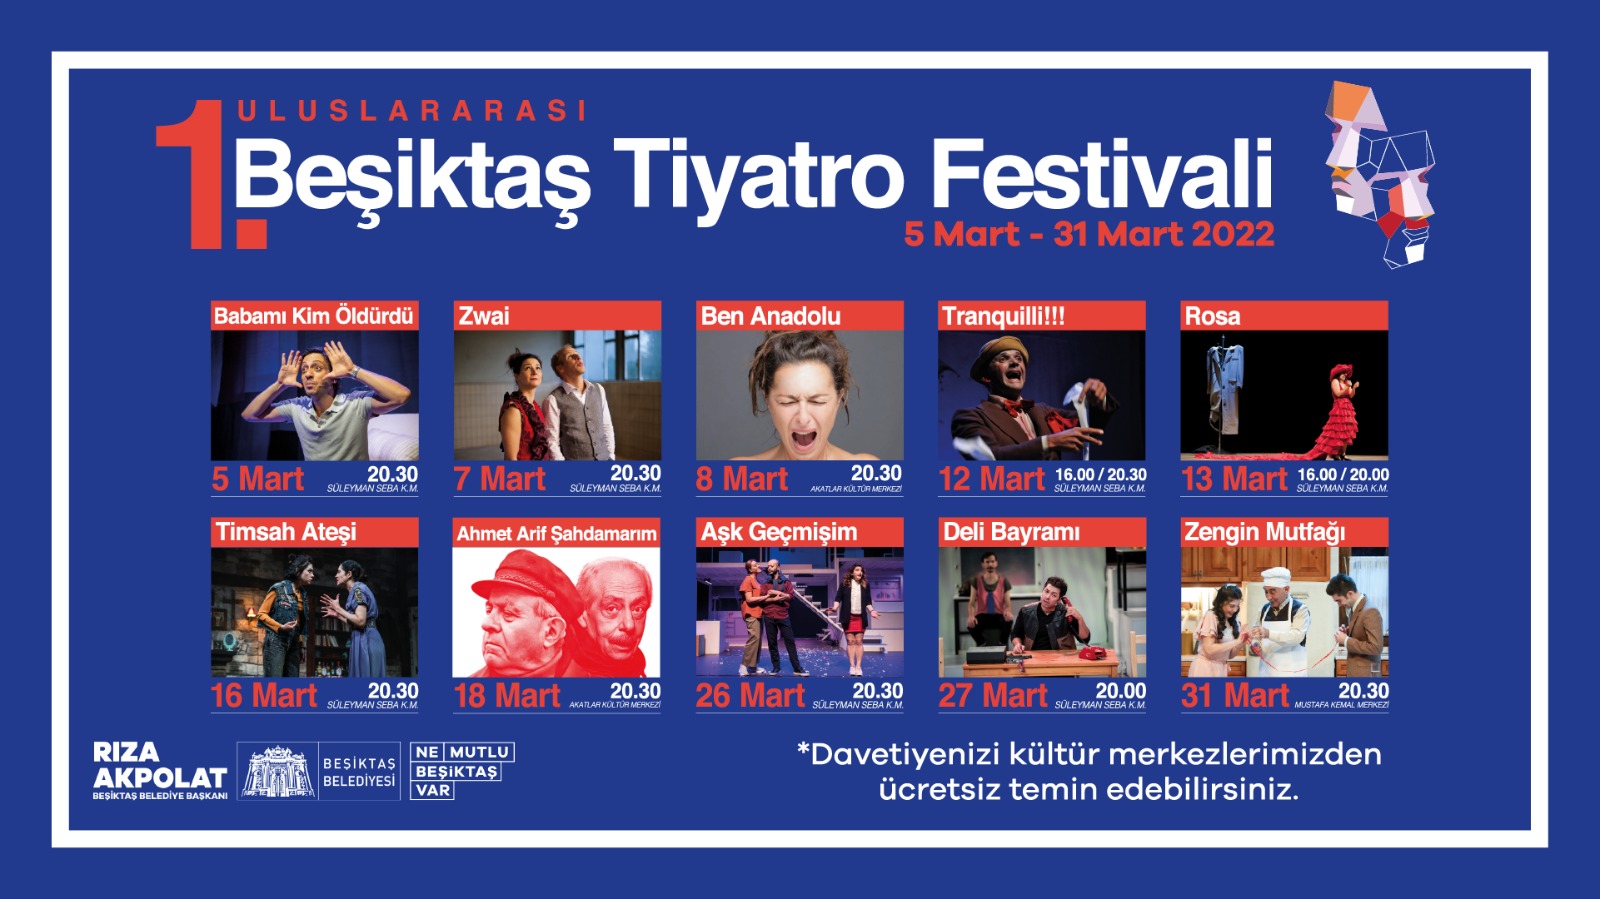 Uluslararası Beşiktaş Tiyatro Festivali